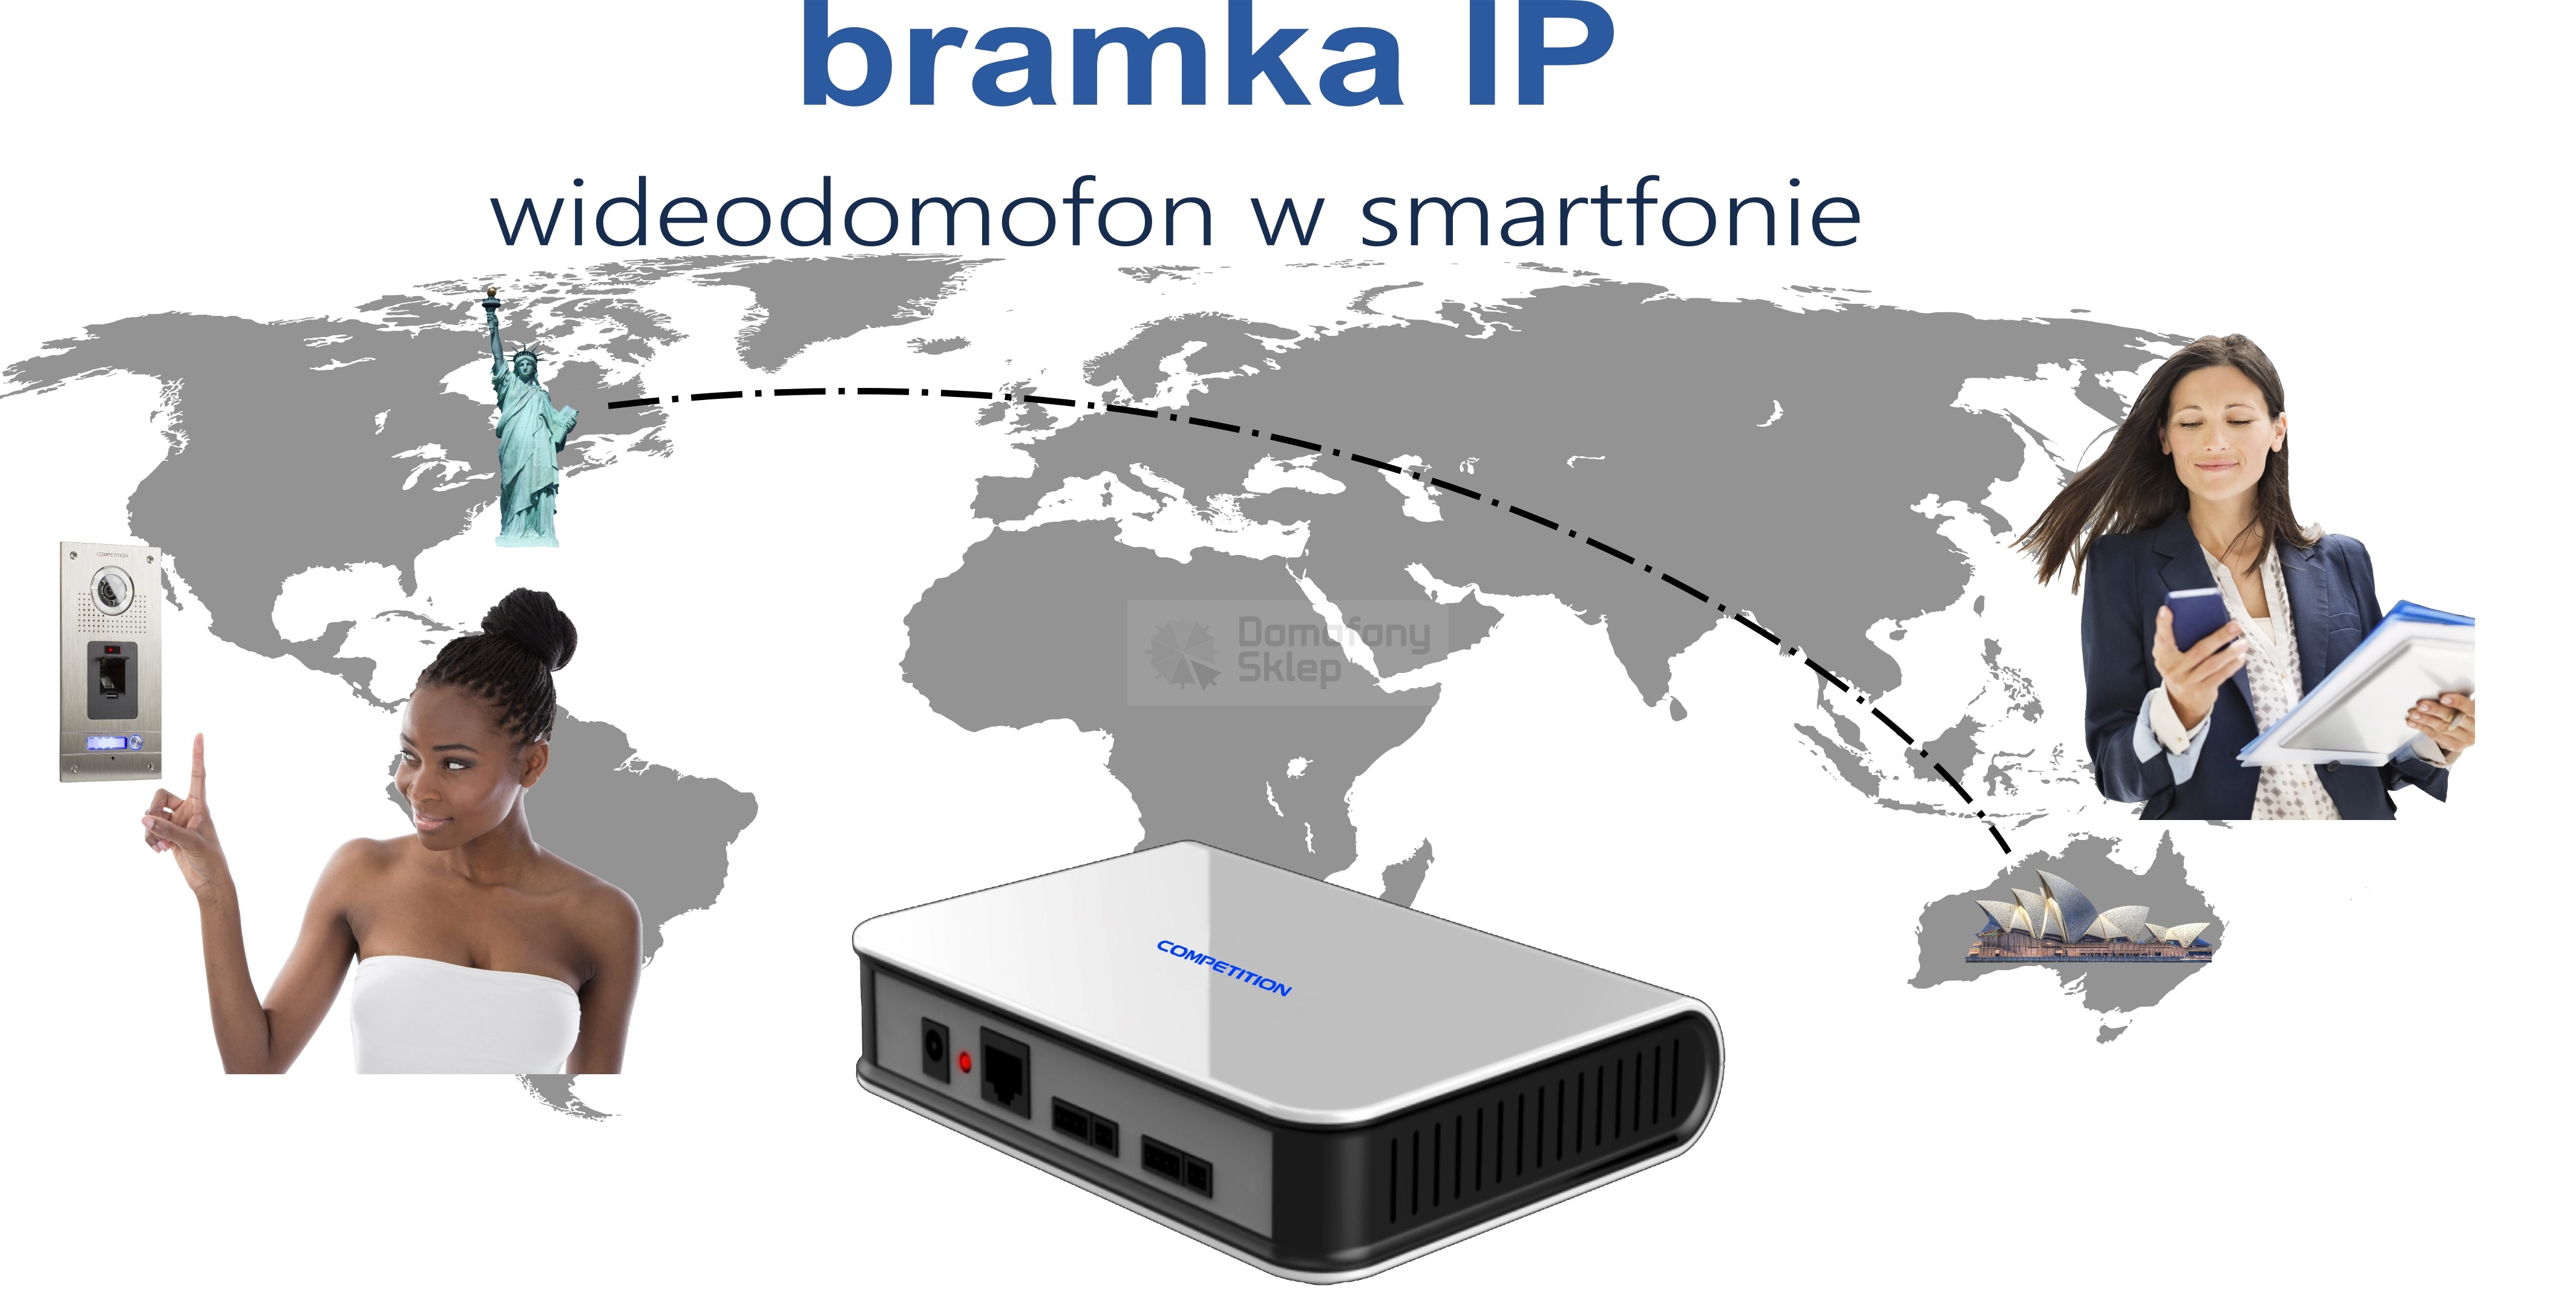 bramka IP, wideodomofon w smartfonie, wideodomofony